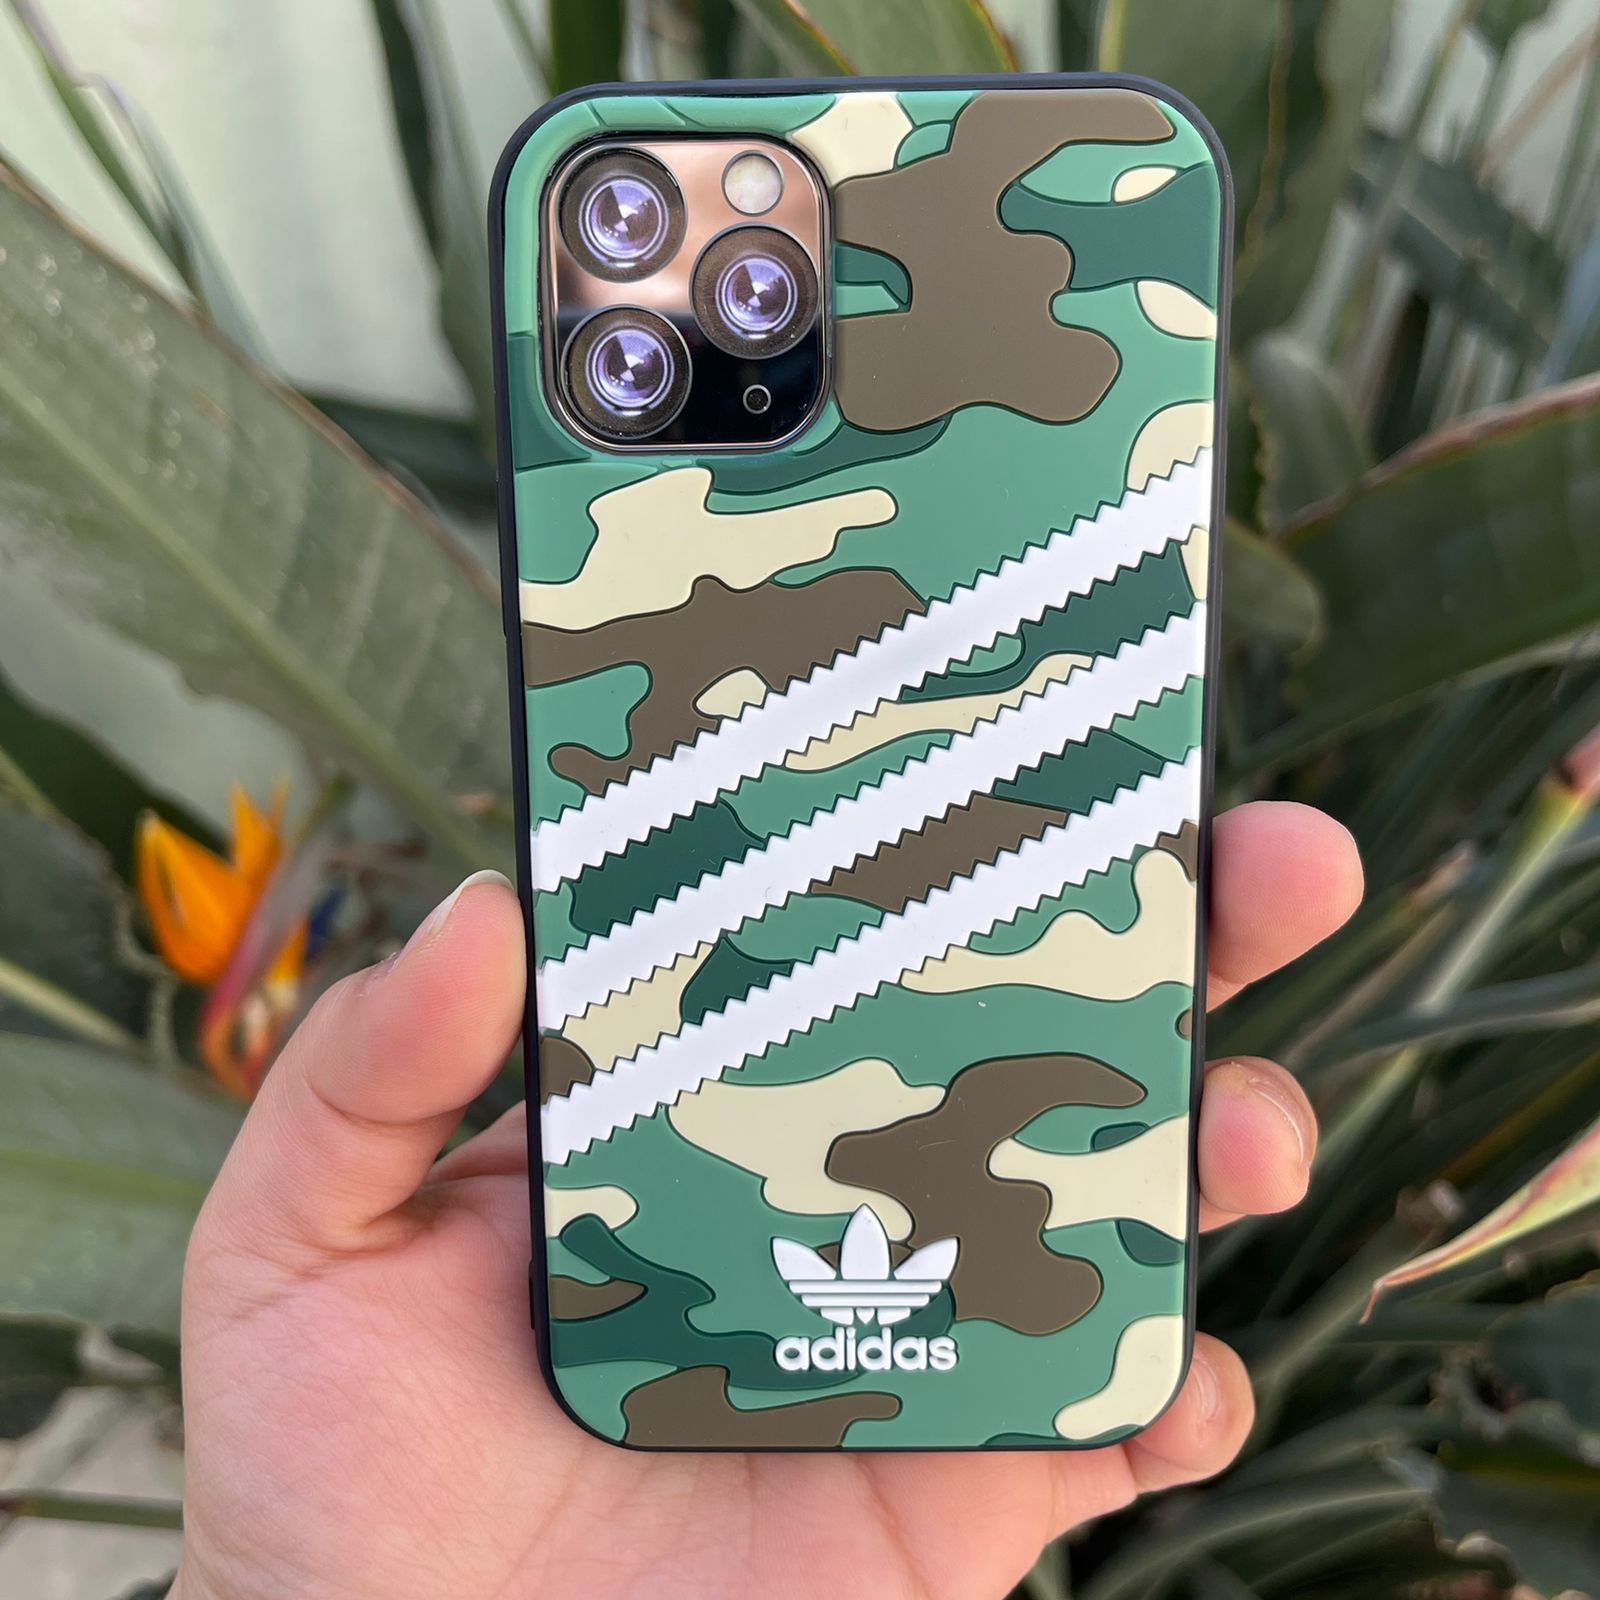 Carcasa militar Adidas iPhone 11 pro